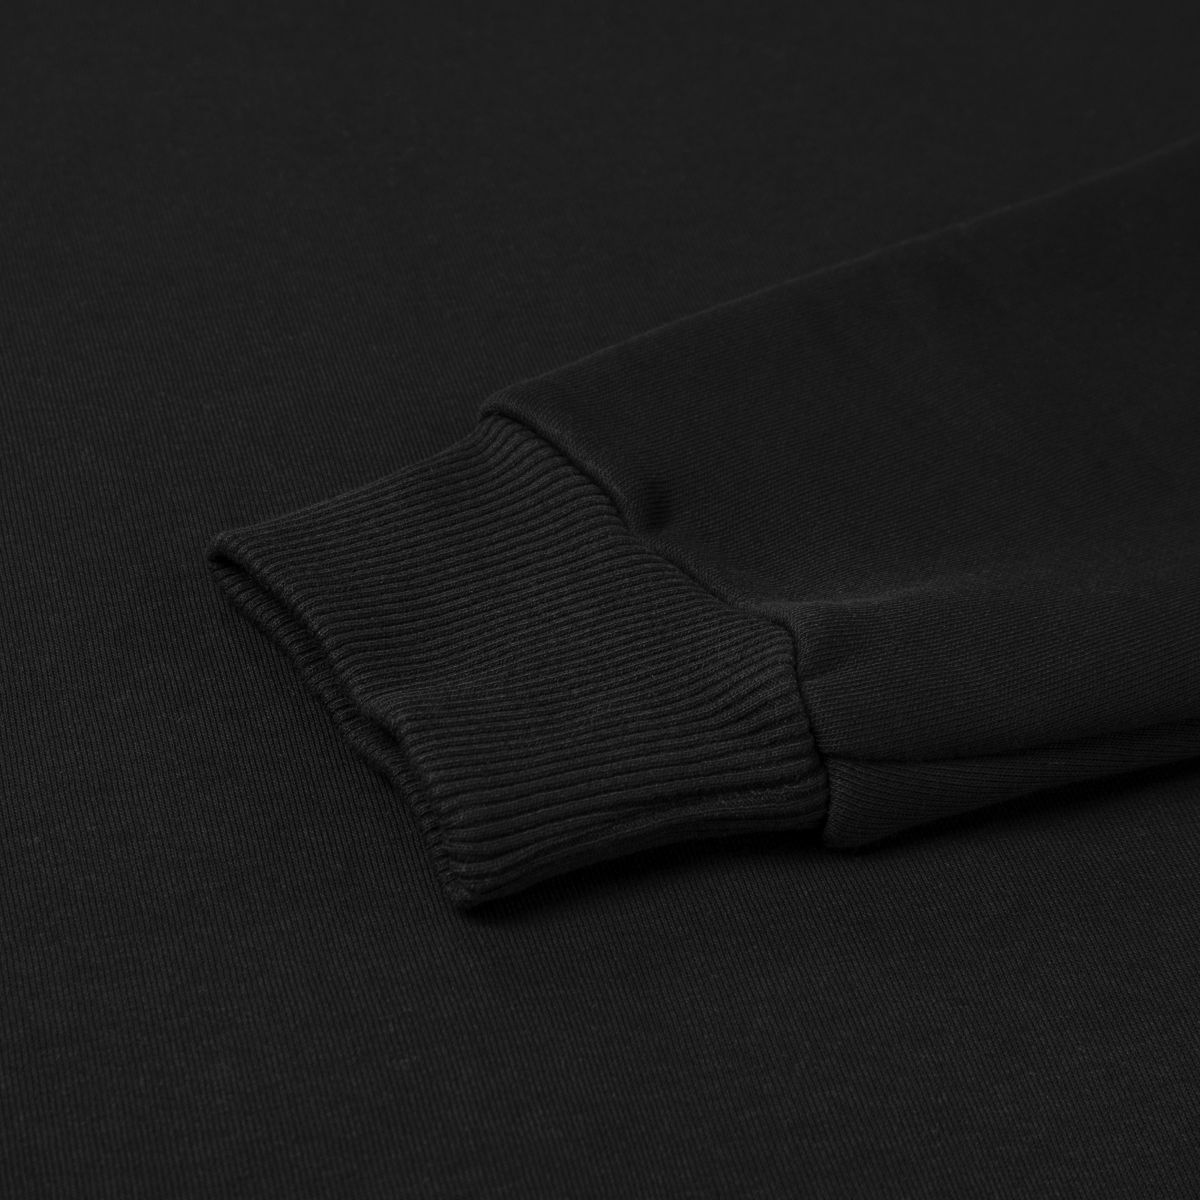 Світшот Base Soft Sweatshirt. Вільний стиль. Колір Чорний/Black. Розмір S 8